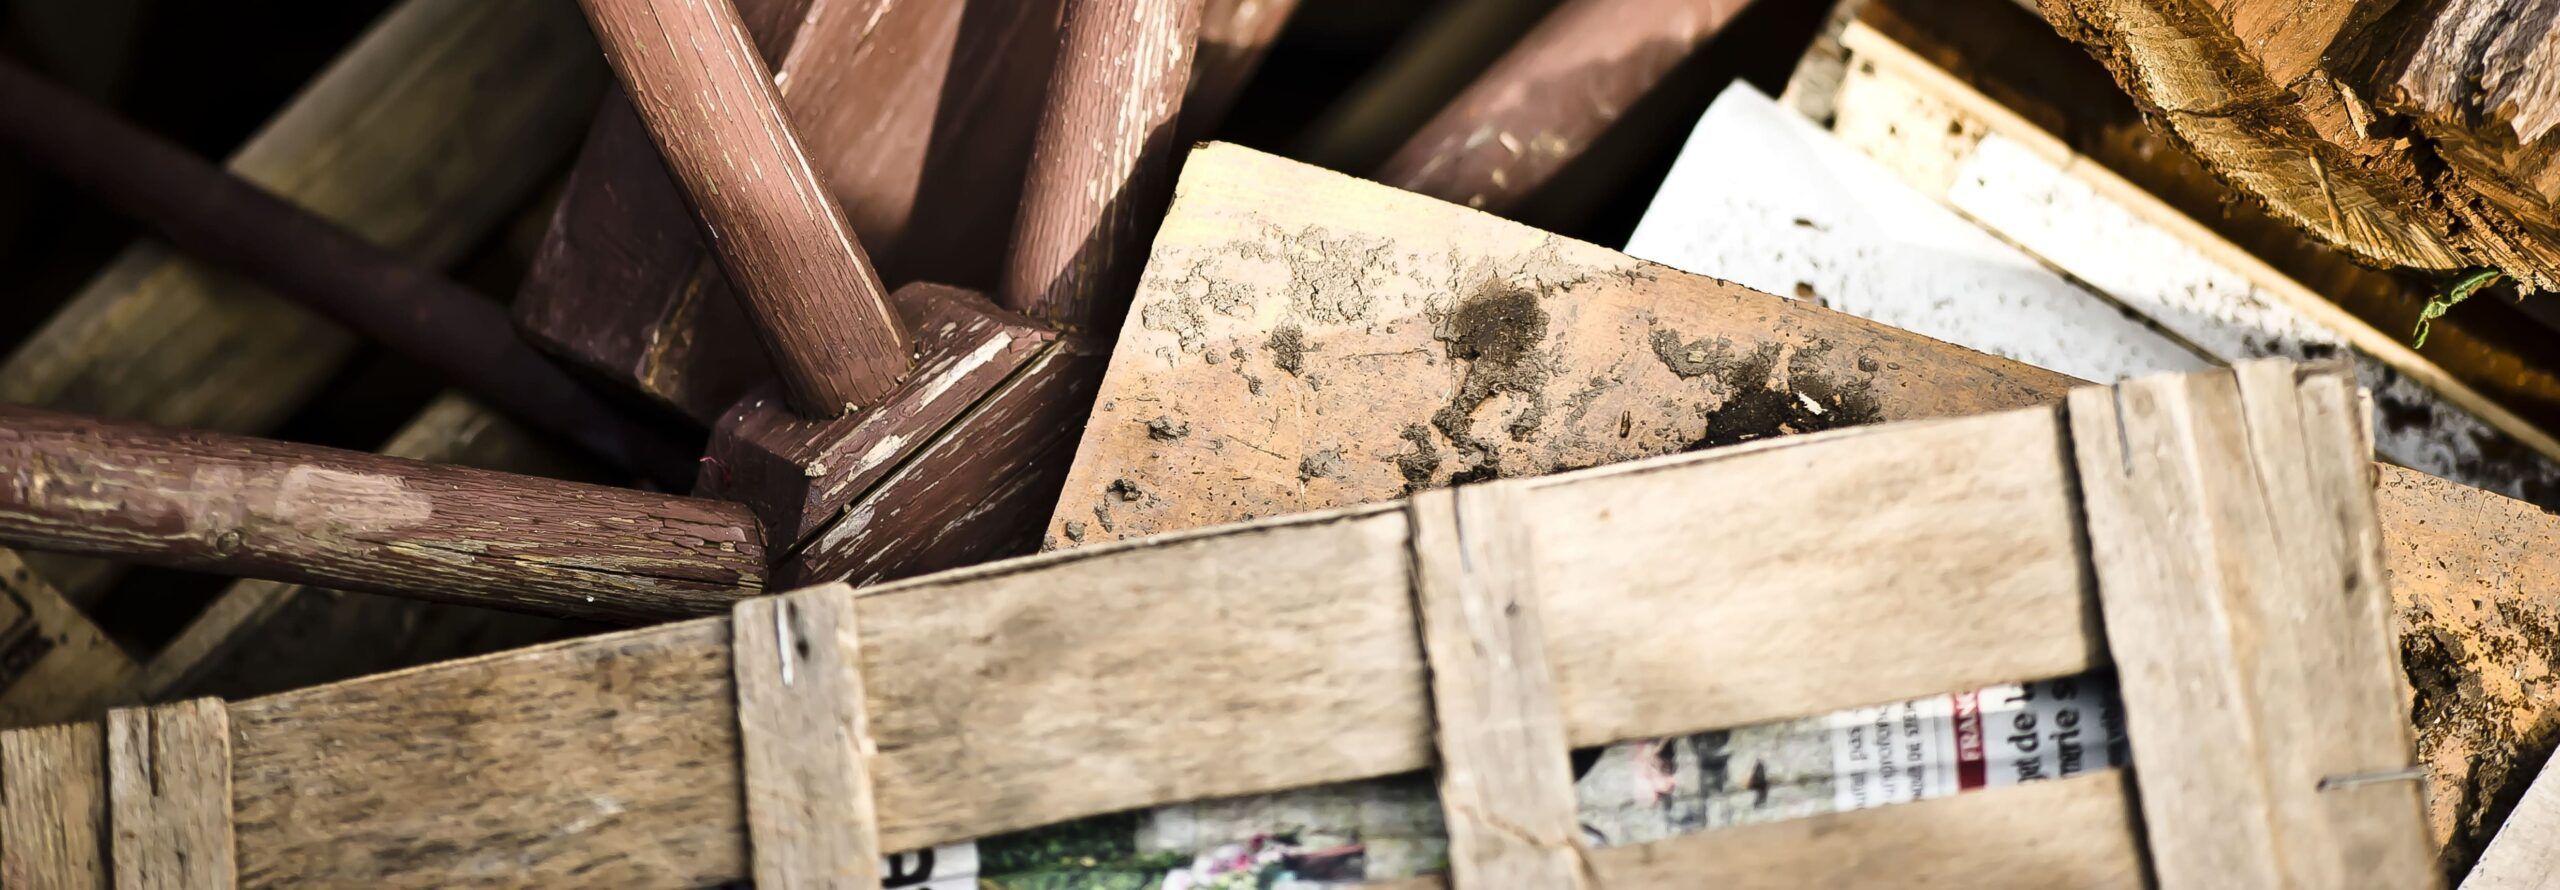 Photo de zoomée de déchets de bois déposés dans une benne en déchèterie